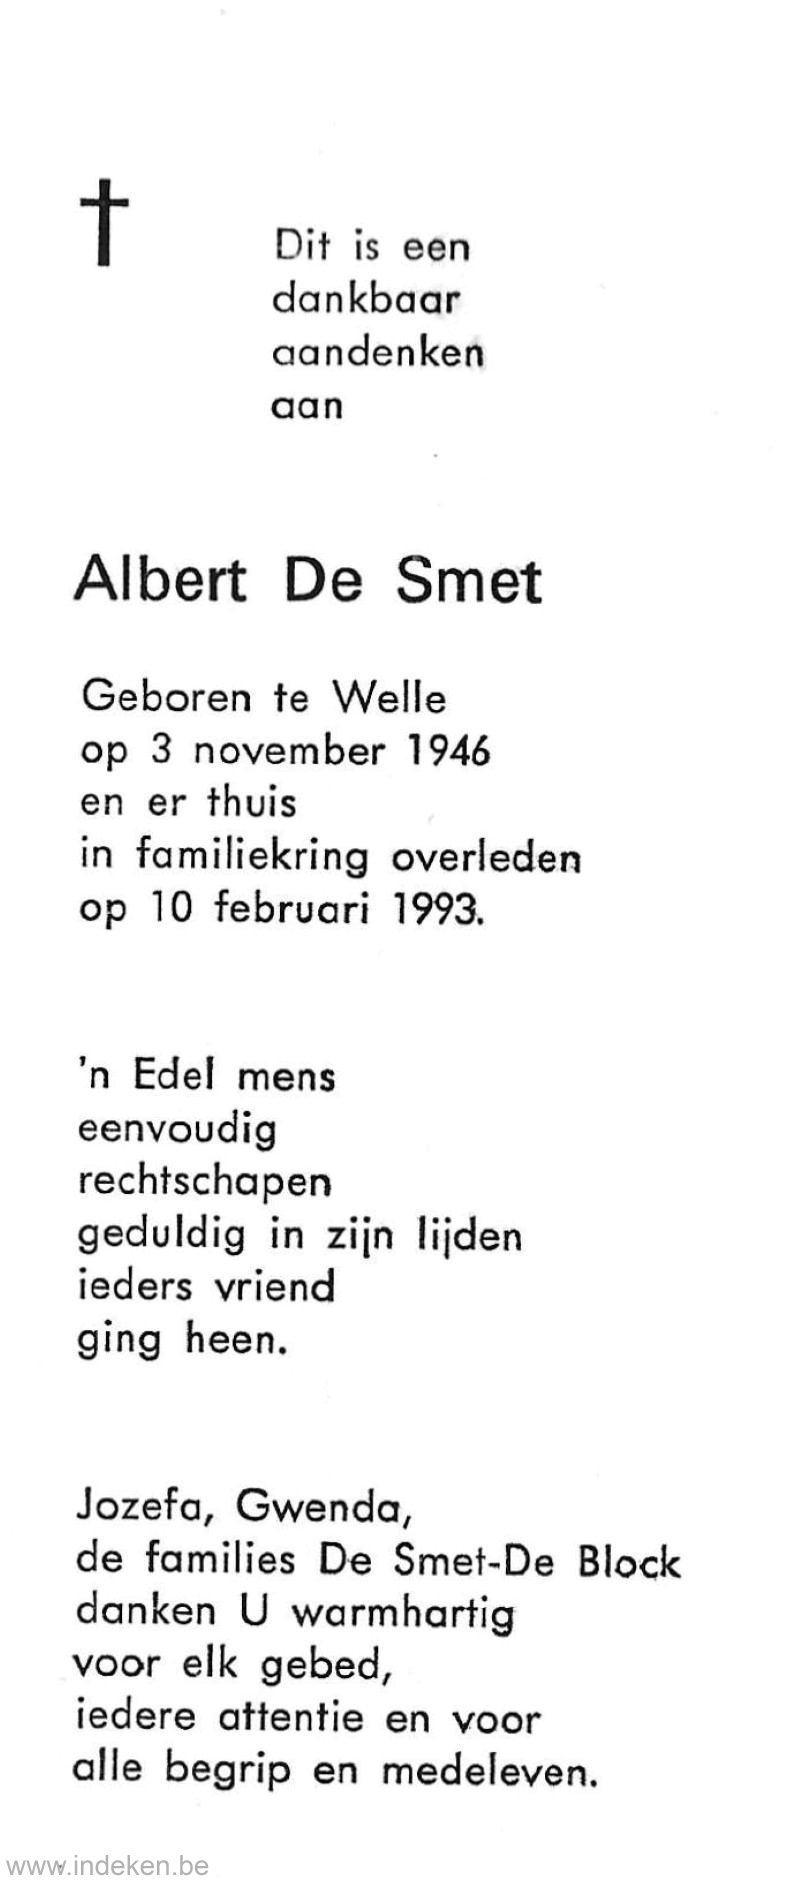 Albert De Smet